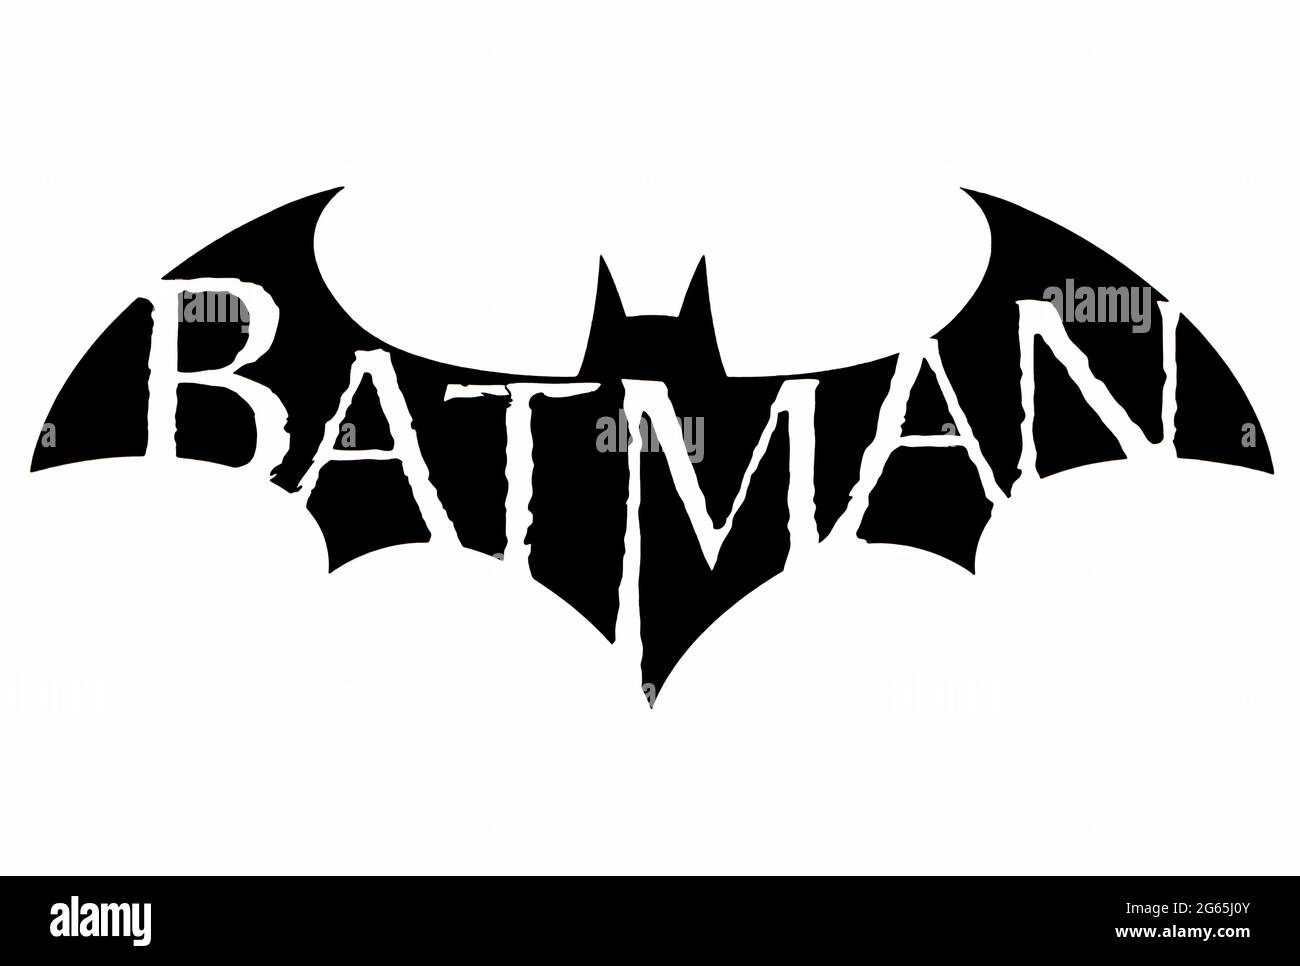 Batman character Banque d'images détourées - Alamy